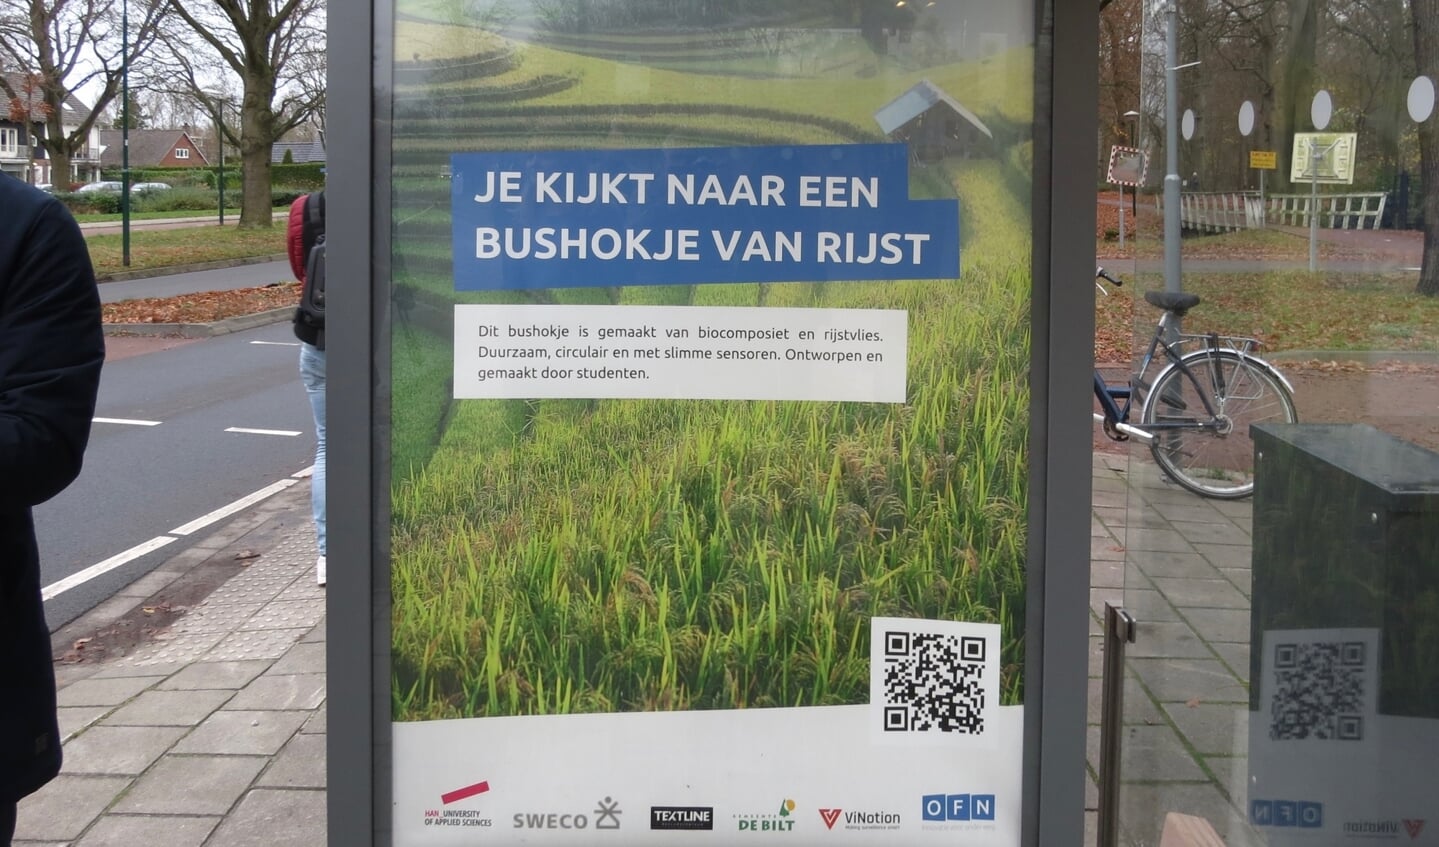 Eerste abri van rijstafval in Nederland staat in De Bilt